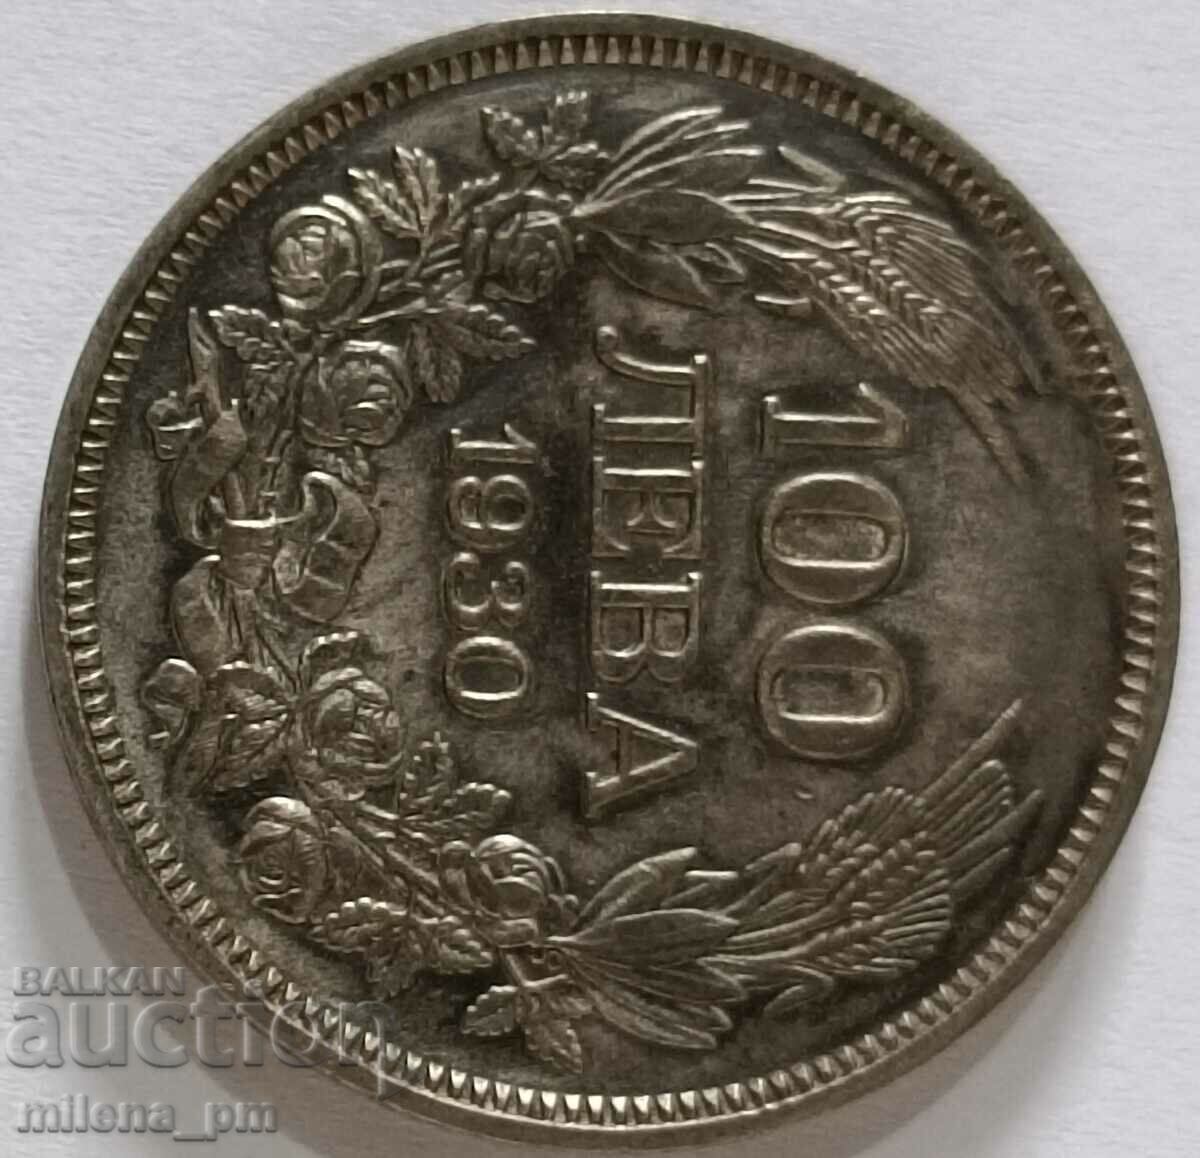 Монета 100 лева 1930 г